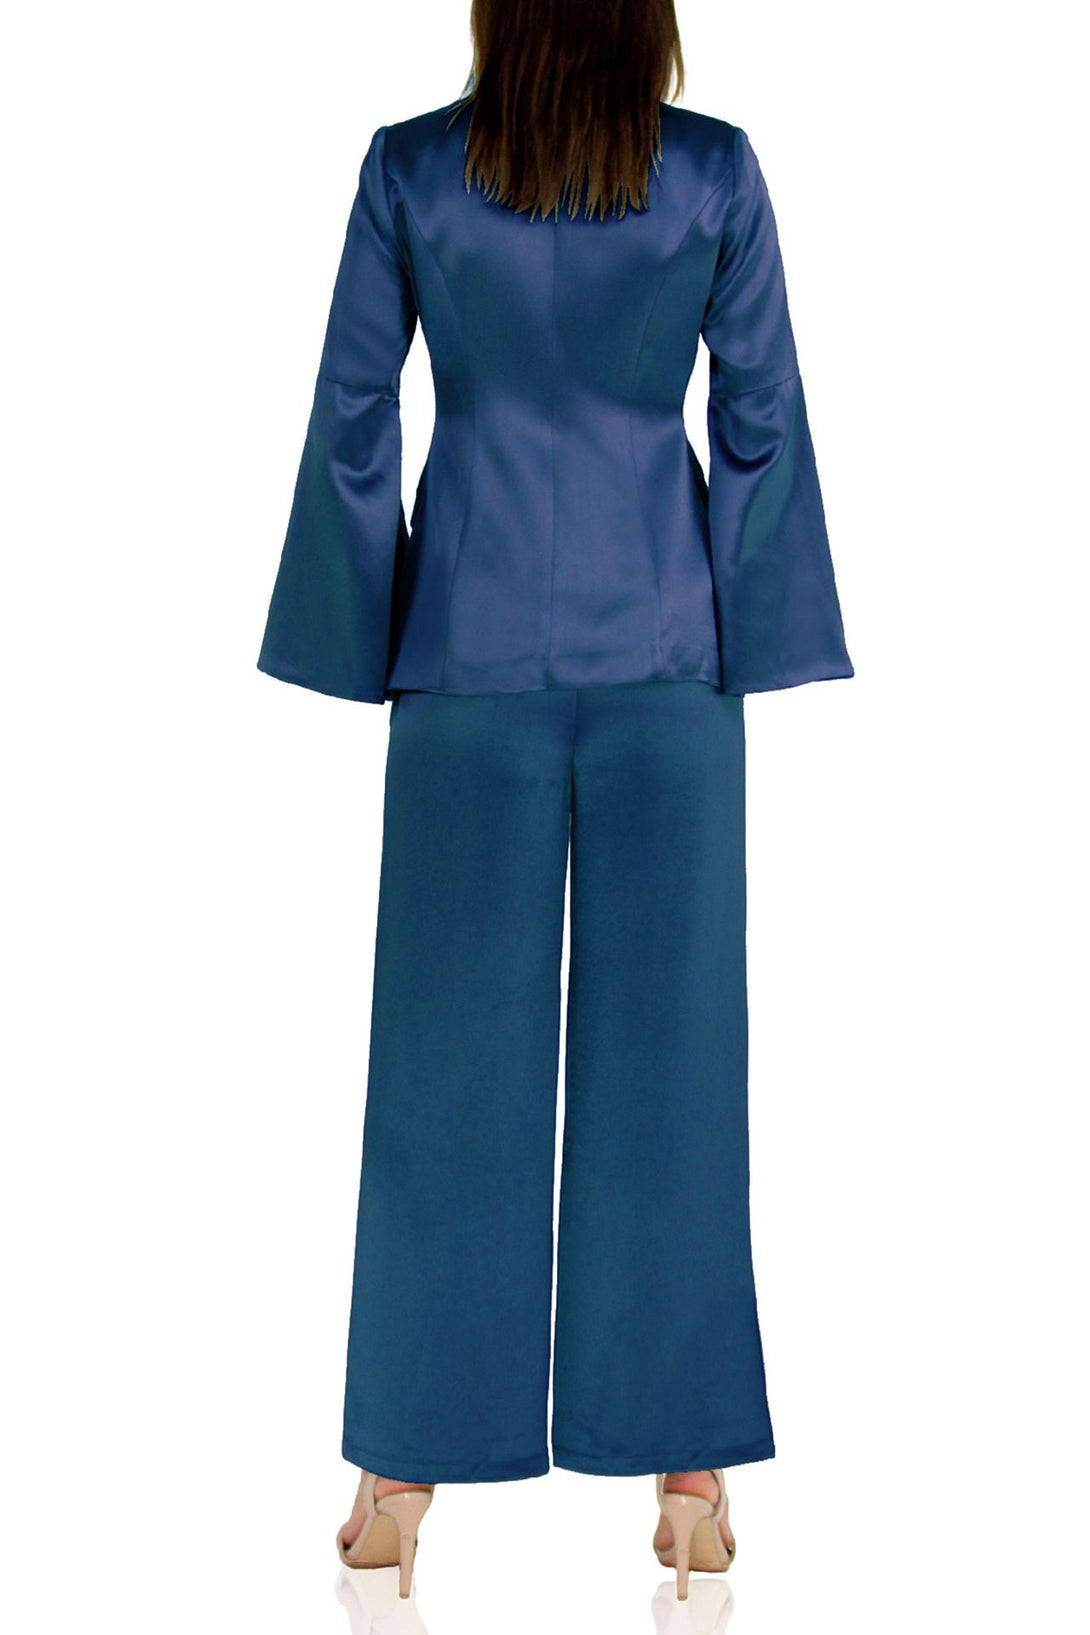 Designer-Women-Blue-Suit-By-Kyle-Richard